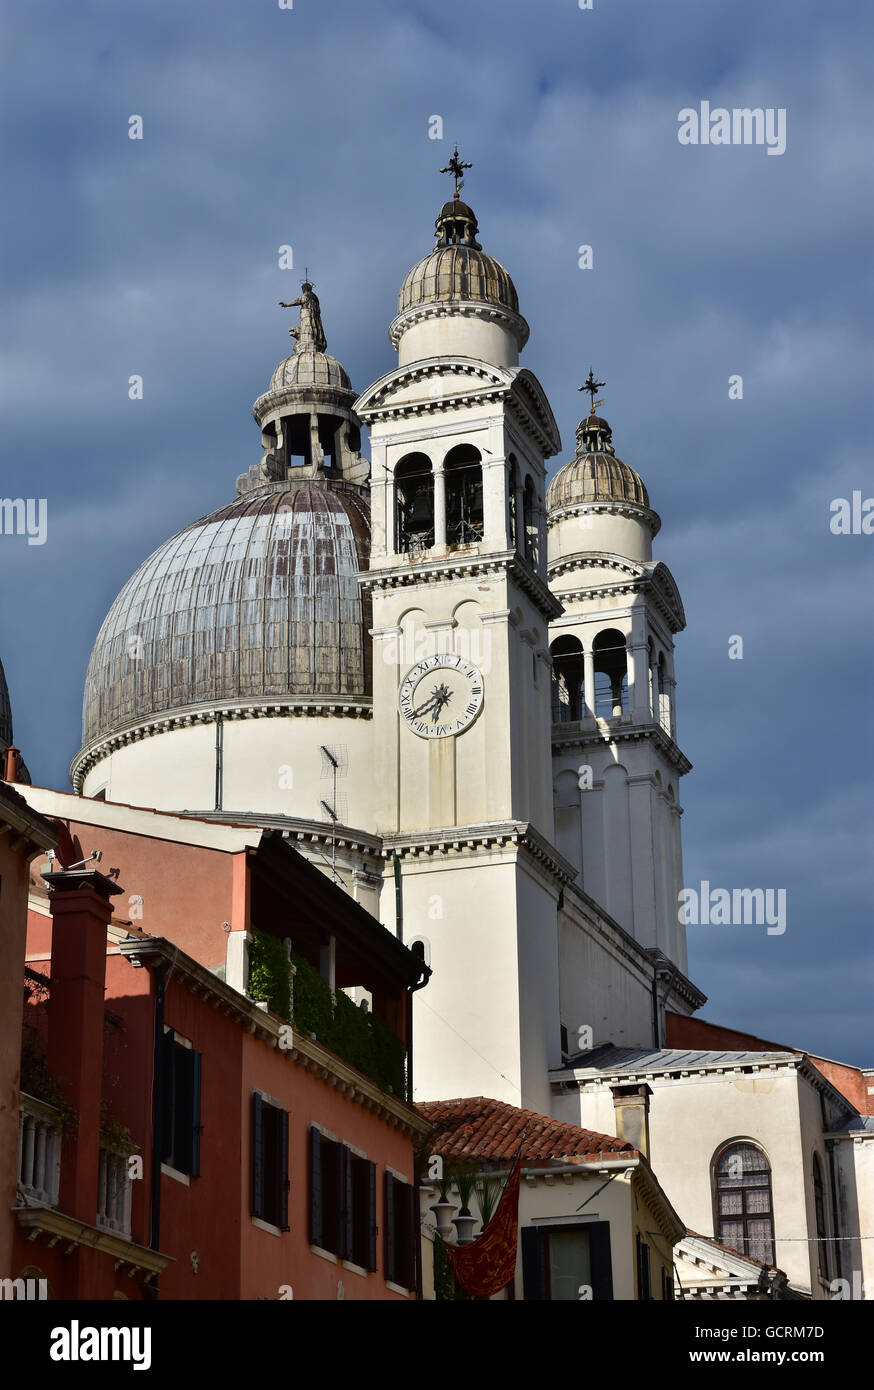 St Mary de l'abside de la santé et de clochers avec ciel nuageux, à Venise Banque D'Images